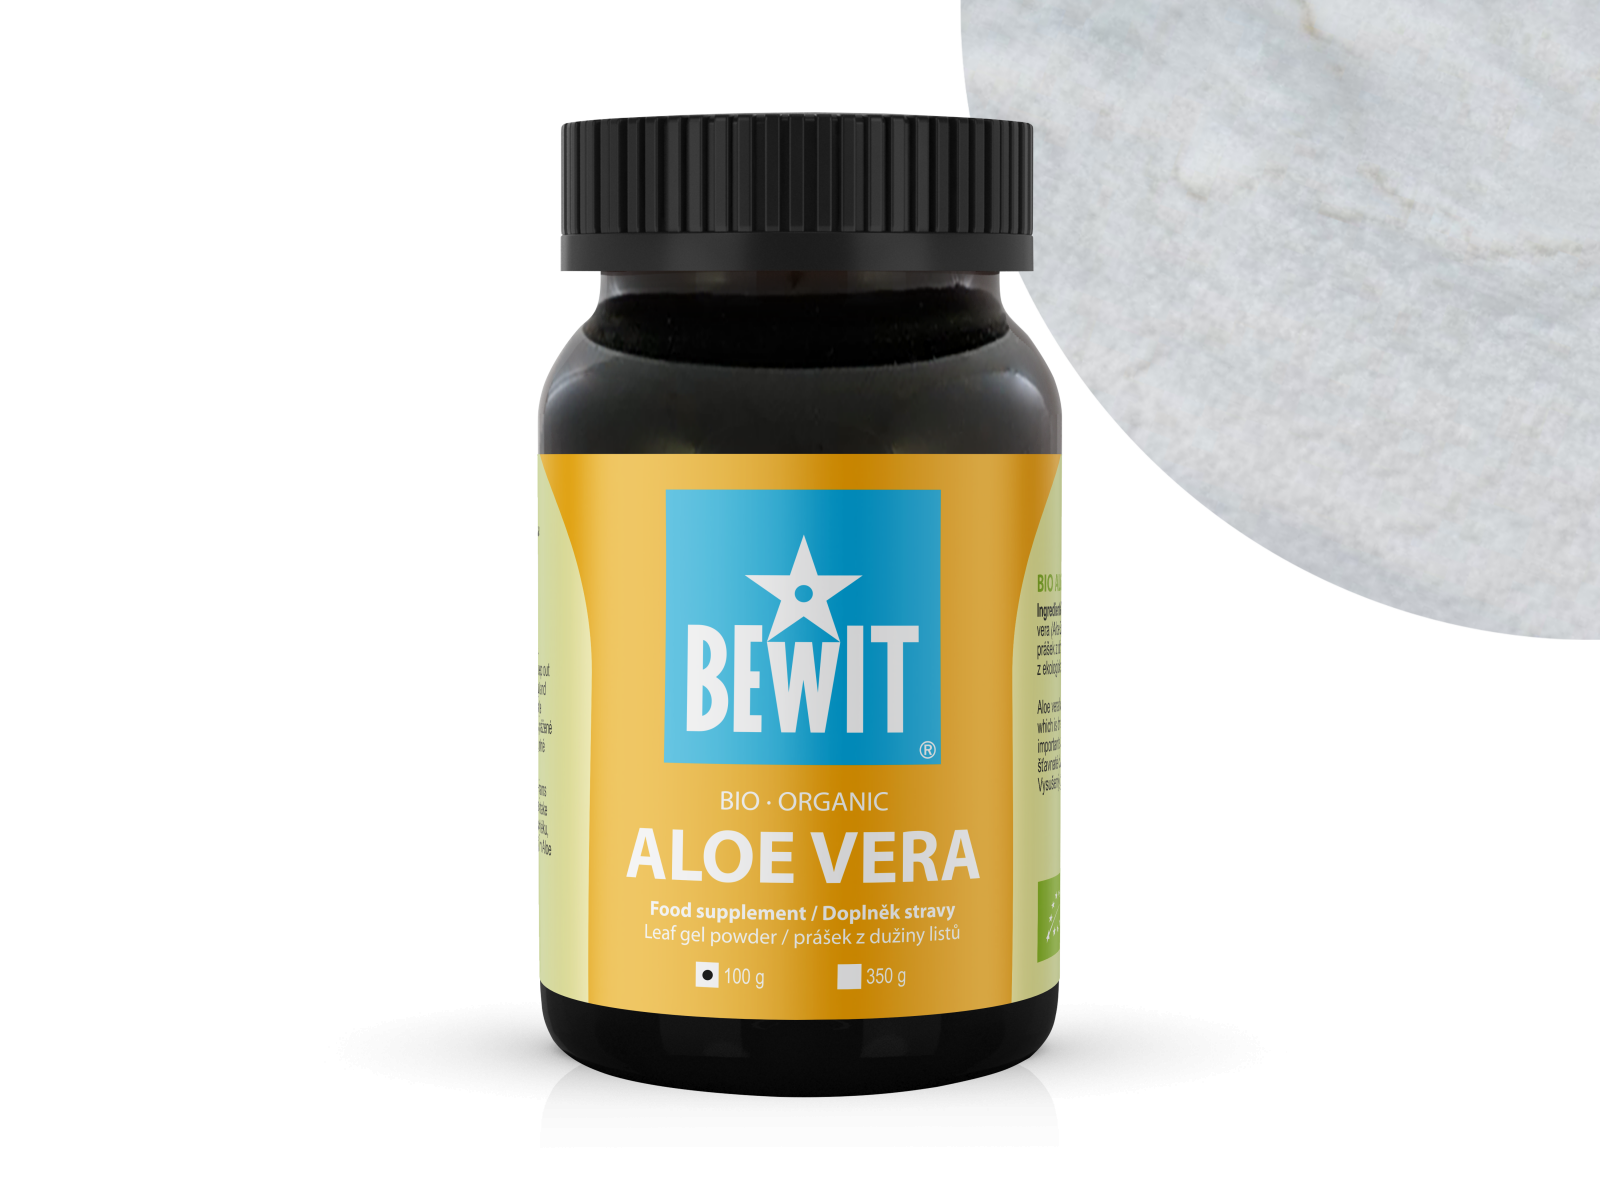 BEWIT Aloe vera BIO - Aloe Vera, sproszkowany miąższ aloesowy, suplement diety